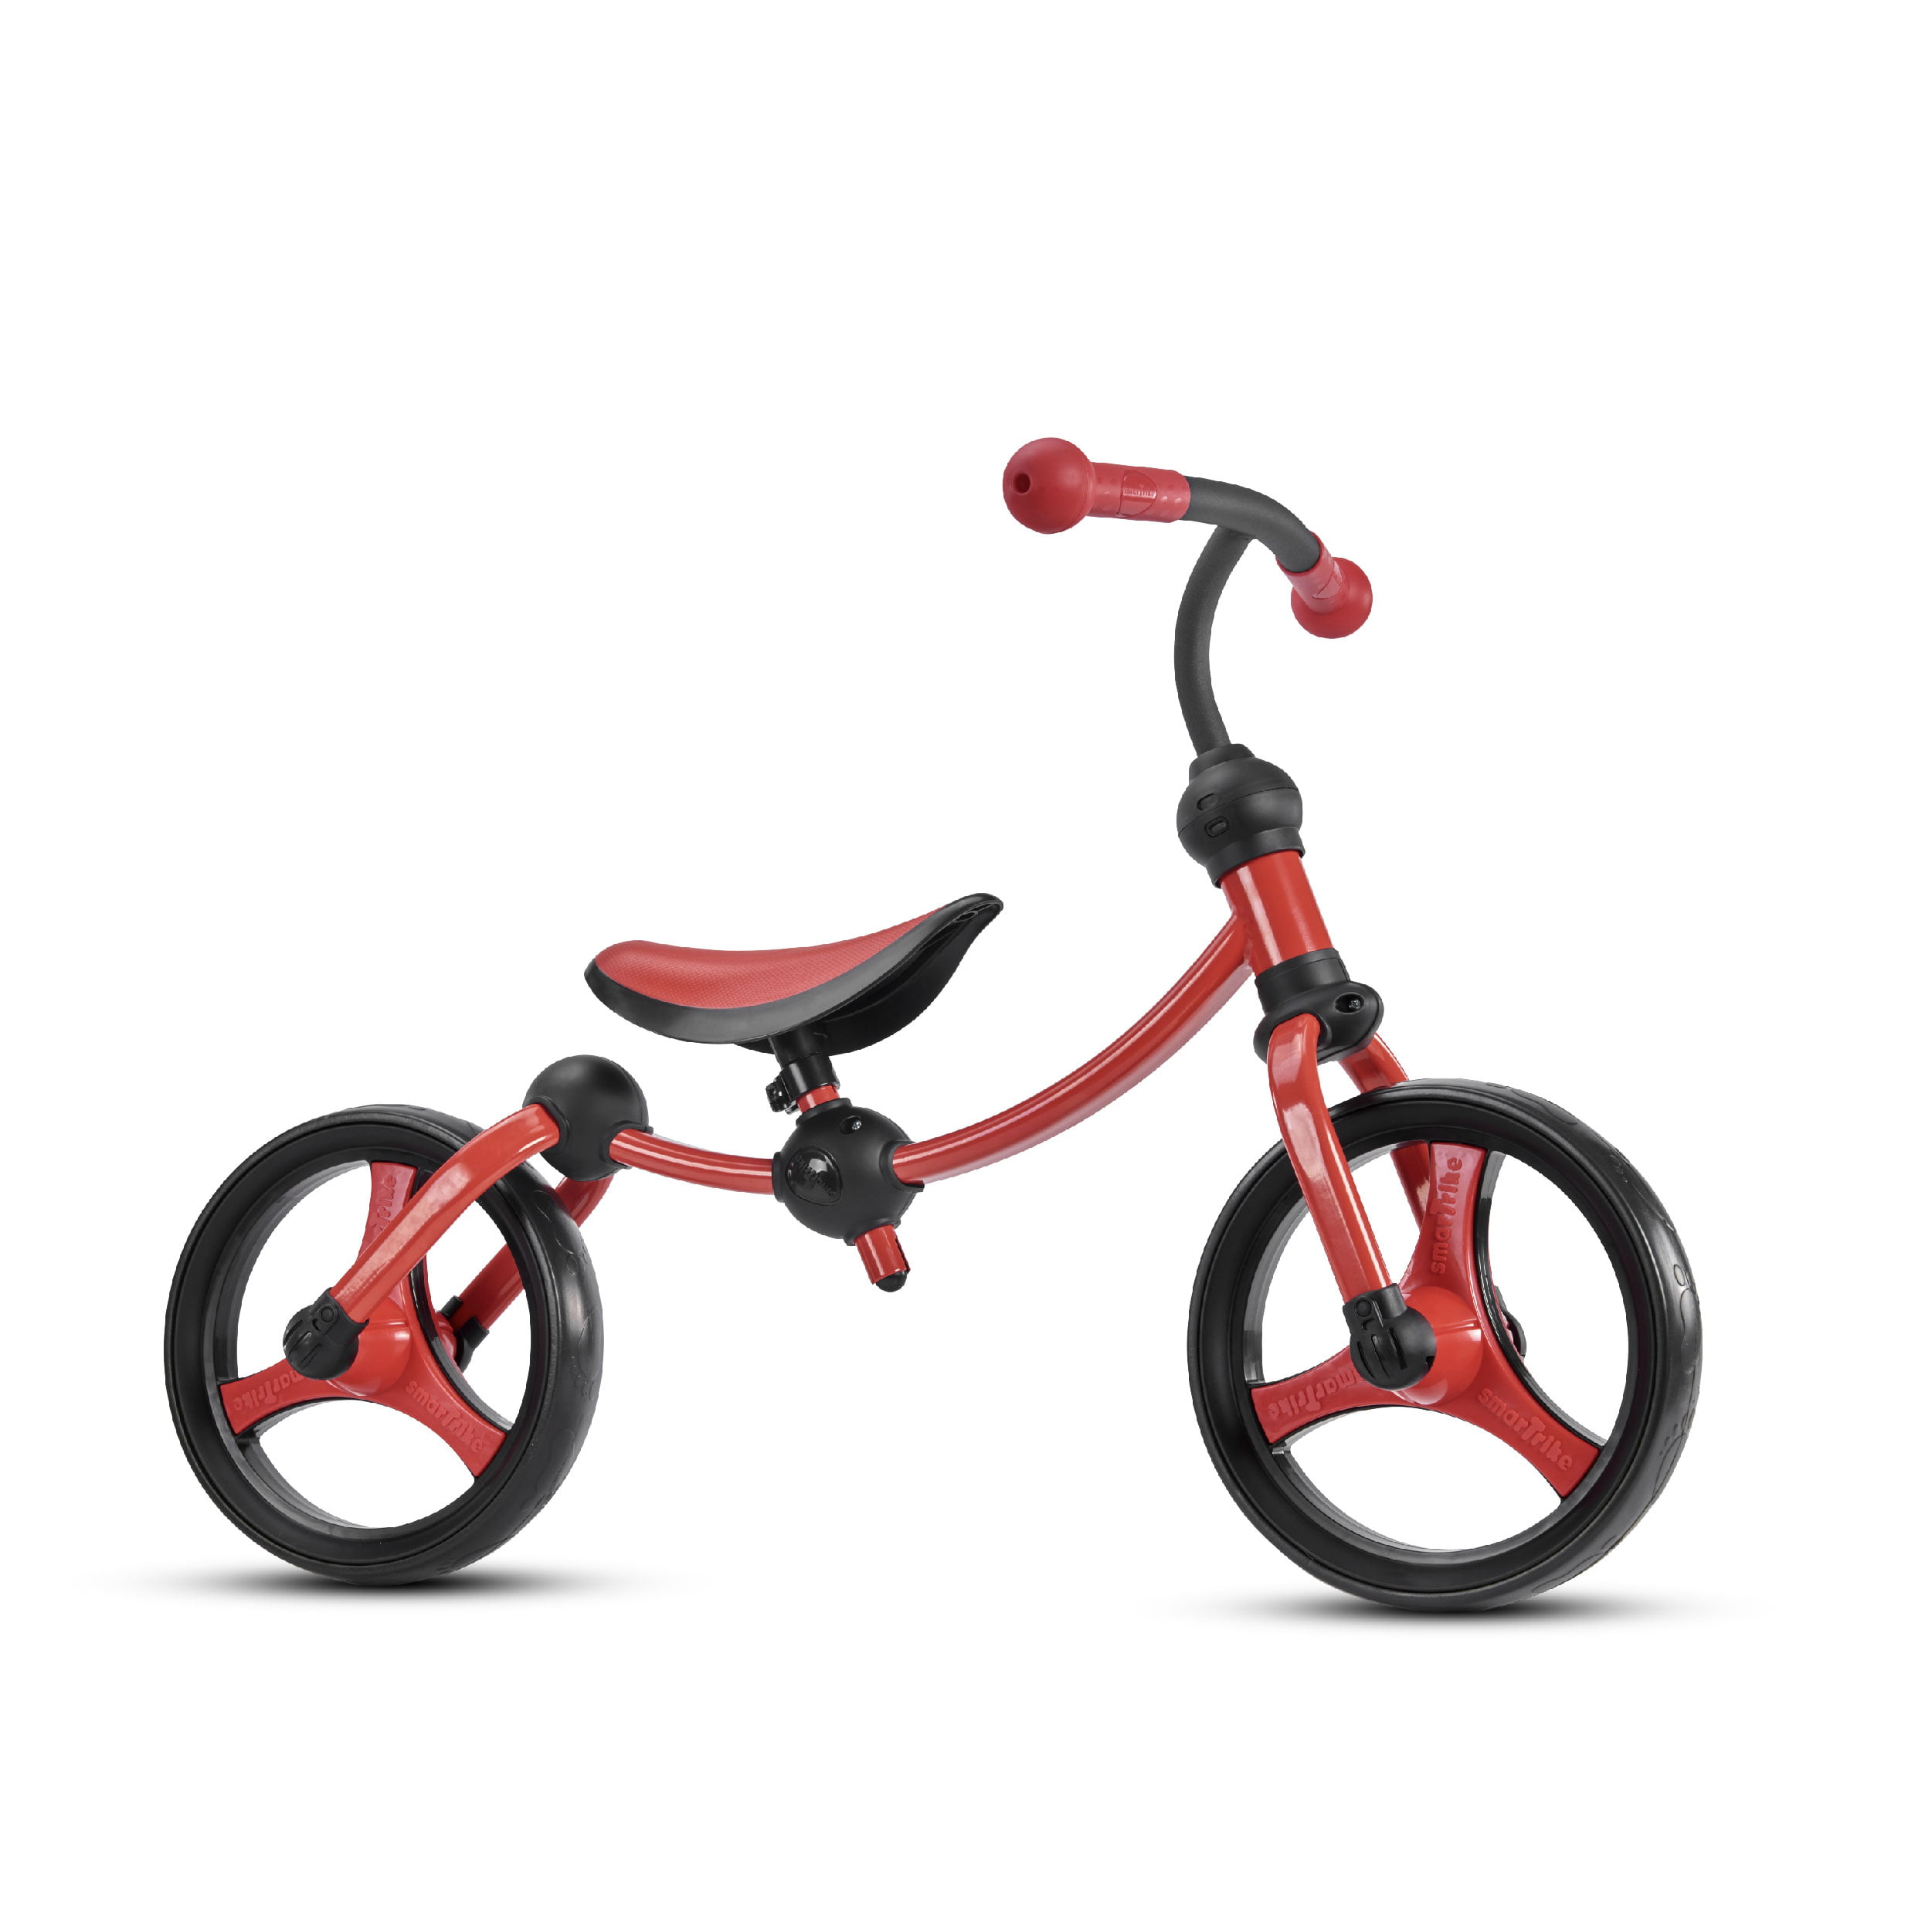 US 12'' Toddler Balance Bike No Pedal Learn Ride Beginner Run Bicycle Kids Gift 